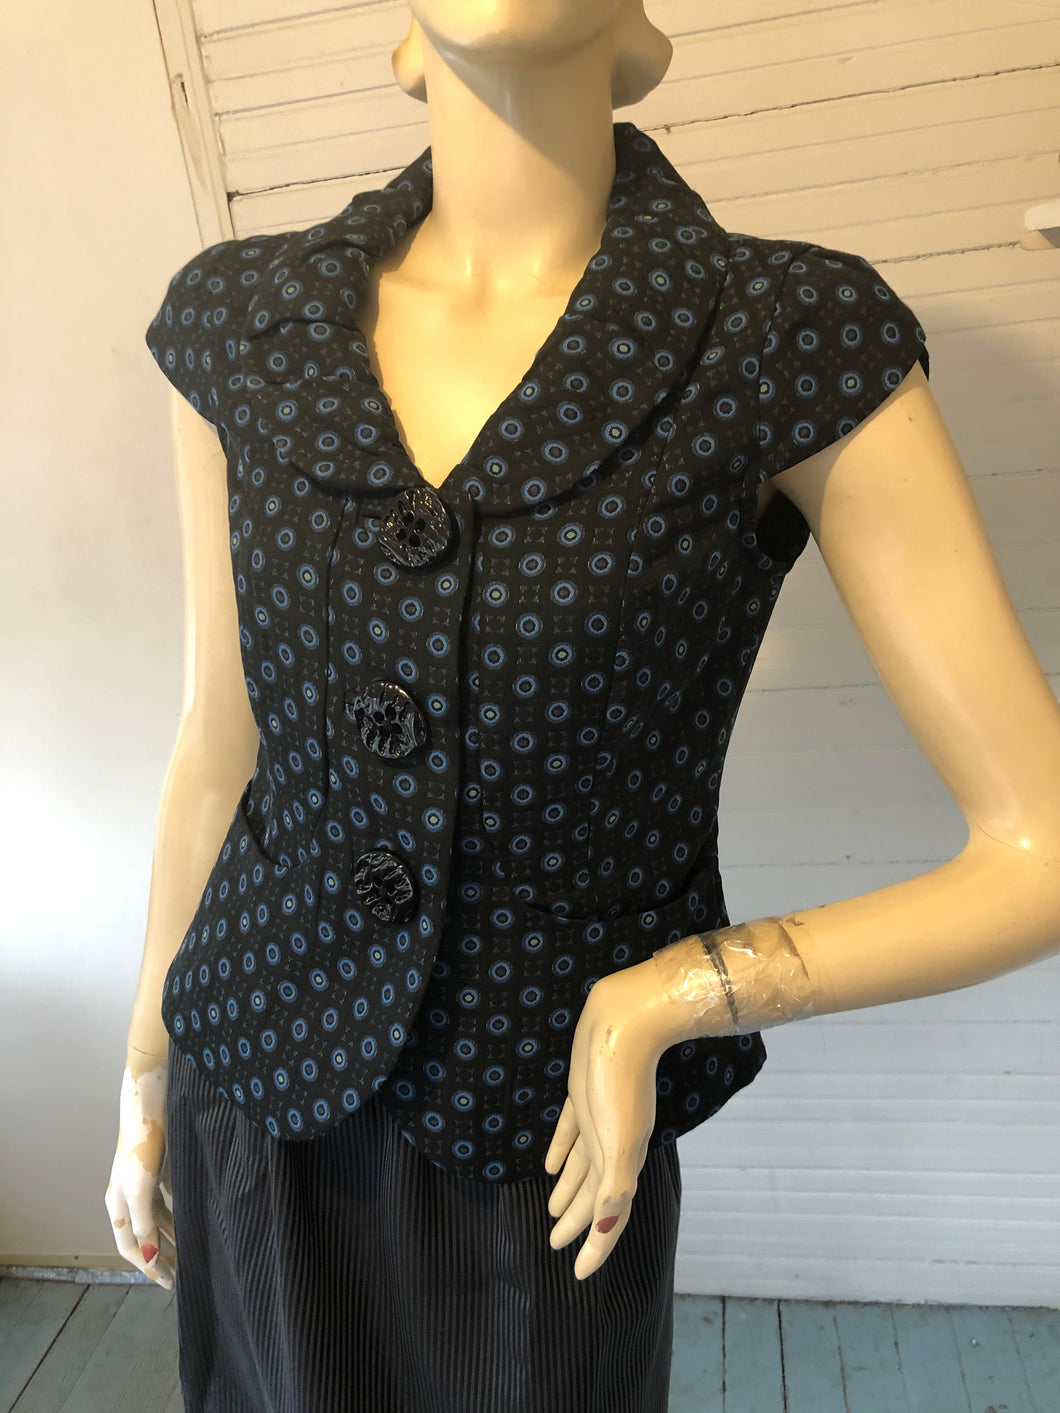 An Ren Cap Sleeve Layering Top/Vest, size 4